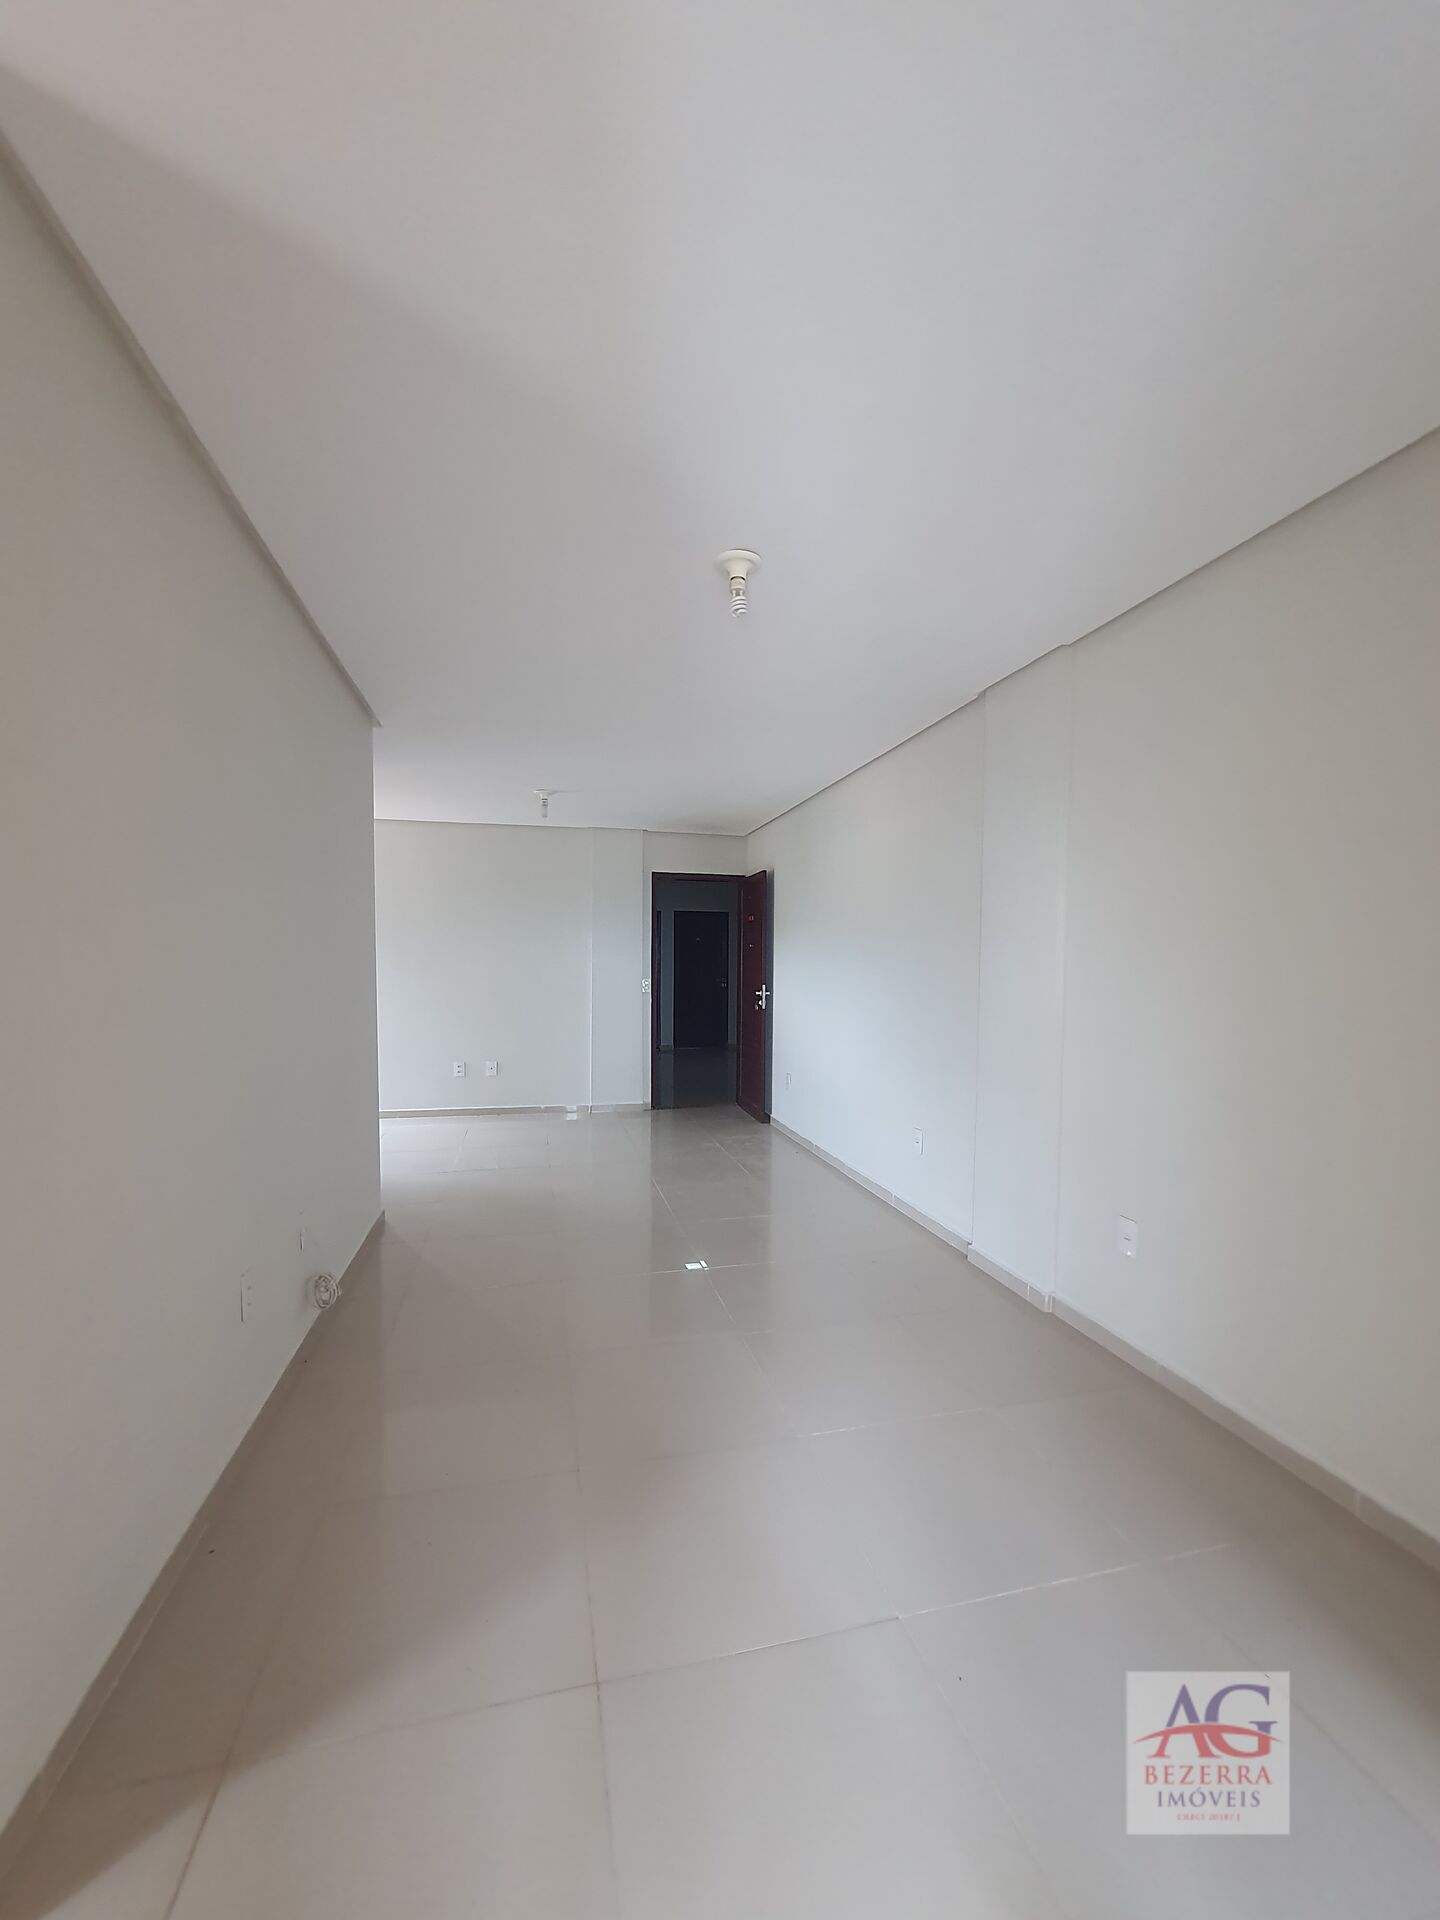 Apartamento, 3 quartos, 80 m² - Foto 3